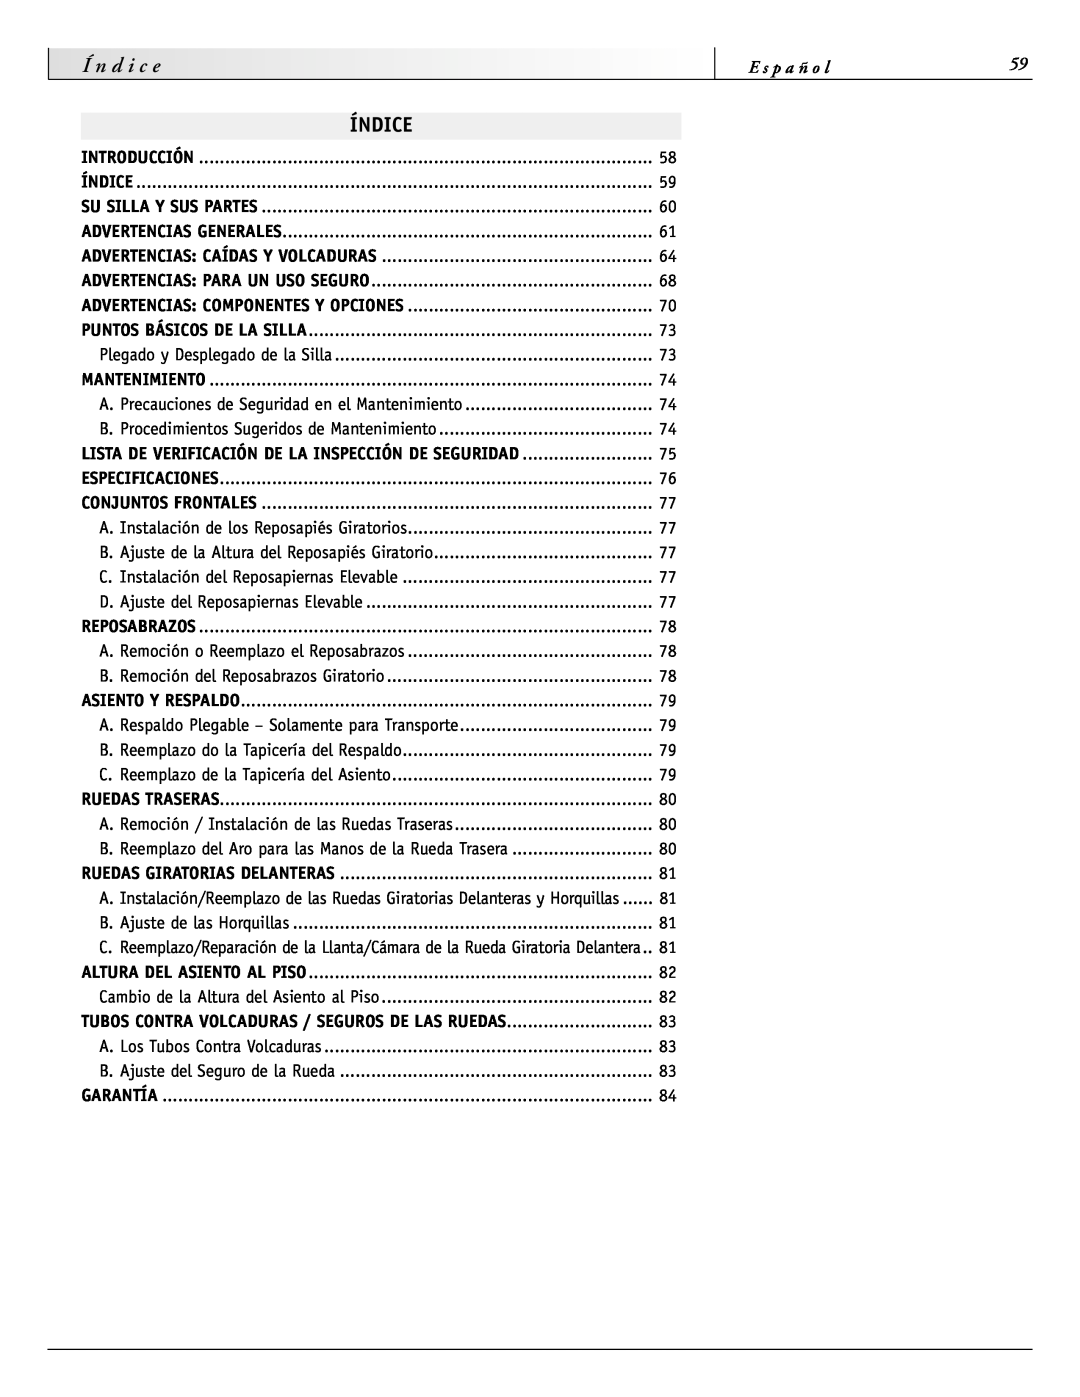 Sunrise Medical 2000 Series Índice, Í n d i c e, E s p a ñ o l, Lista De Verificación De La Inspección De Seguridad 